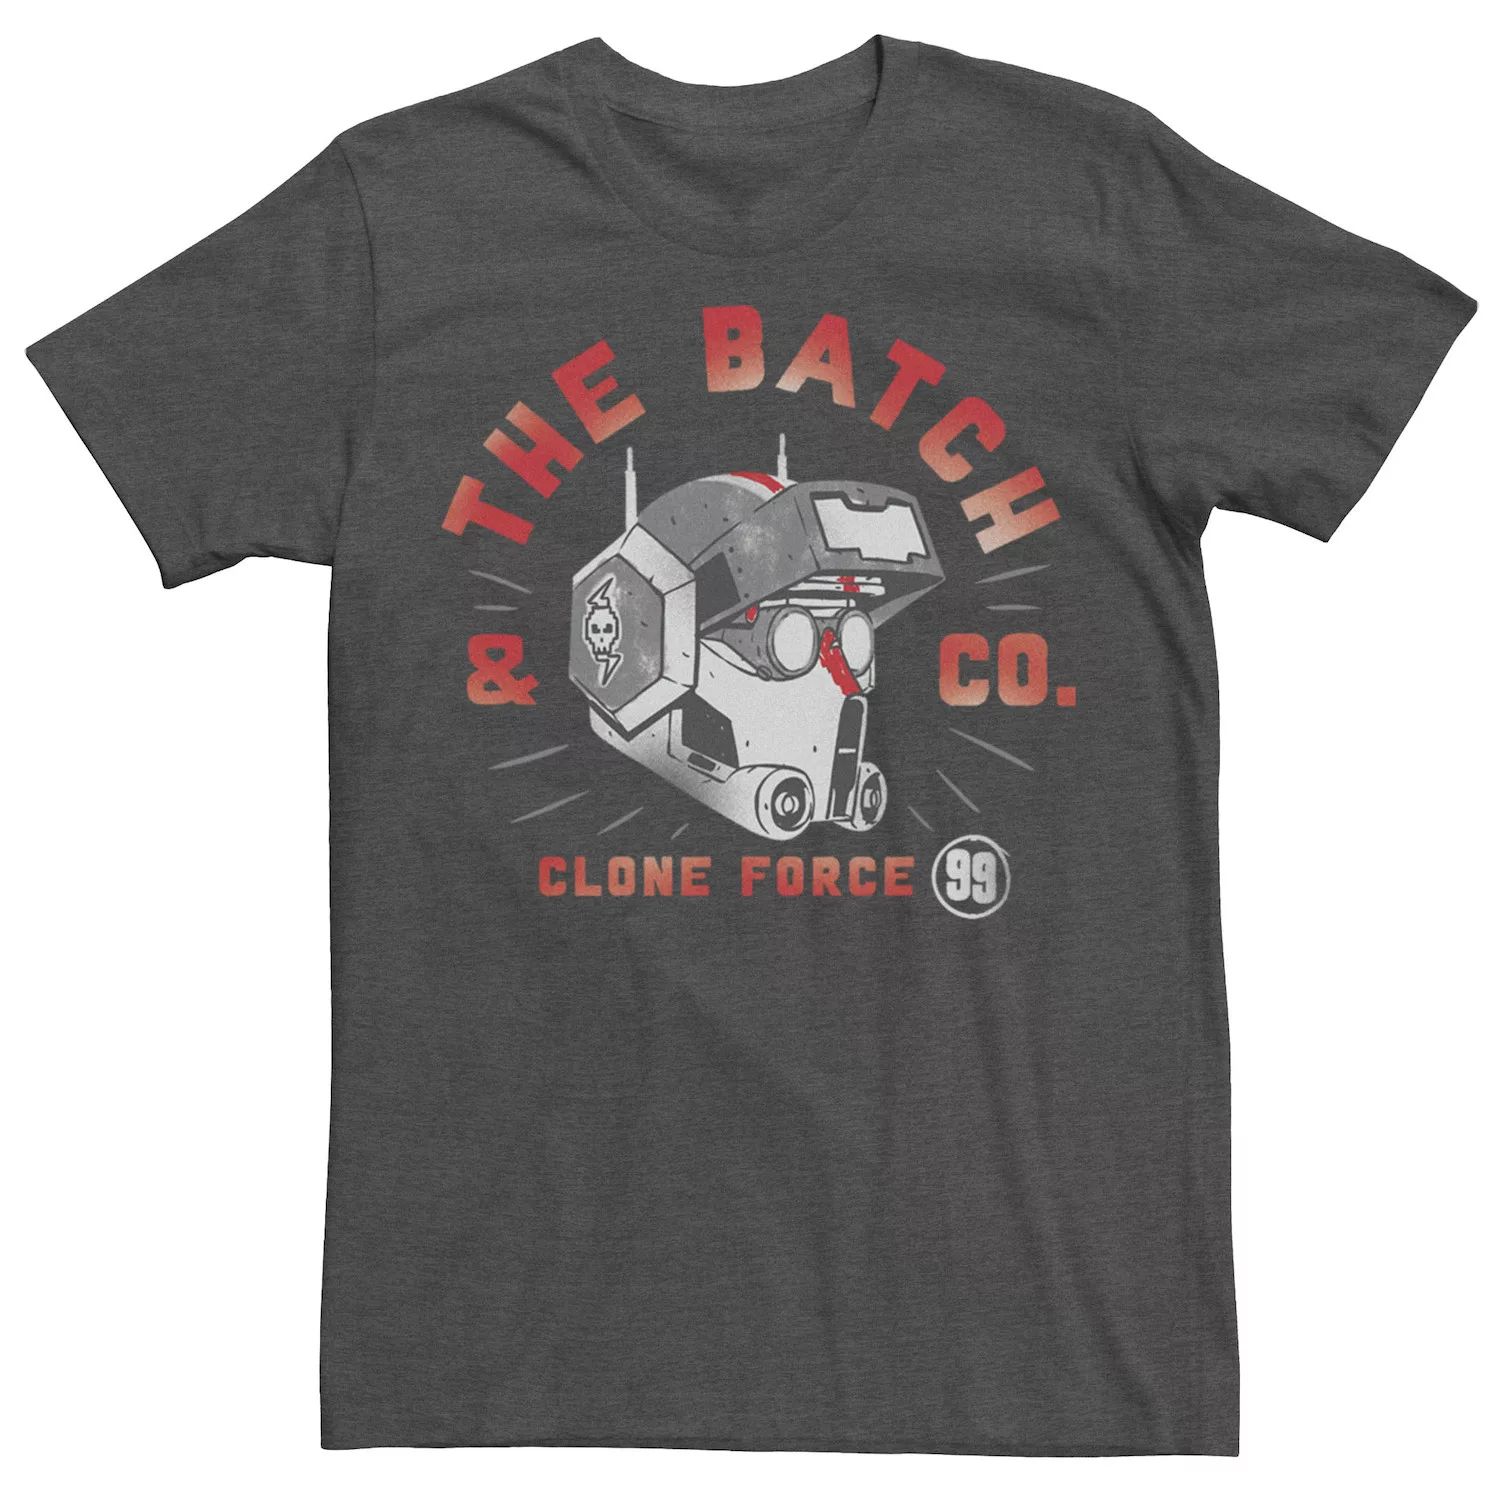 цена Мужская футболка с логотипом Star Wars The Bad Batch & Co. Clone Force Licensed Character